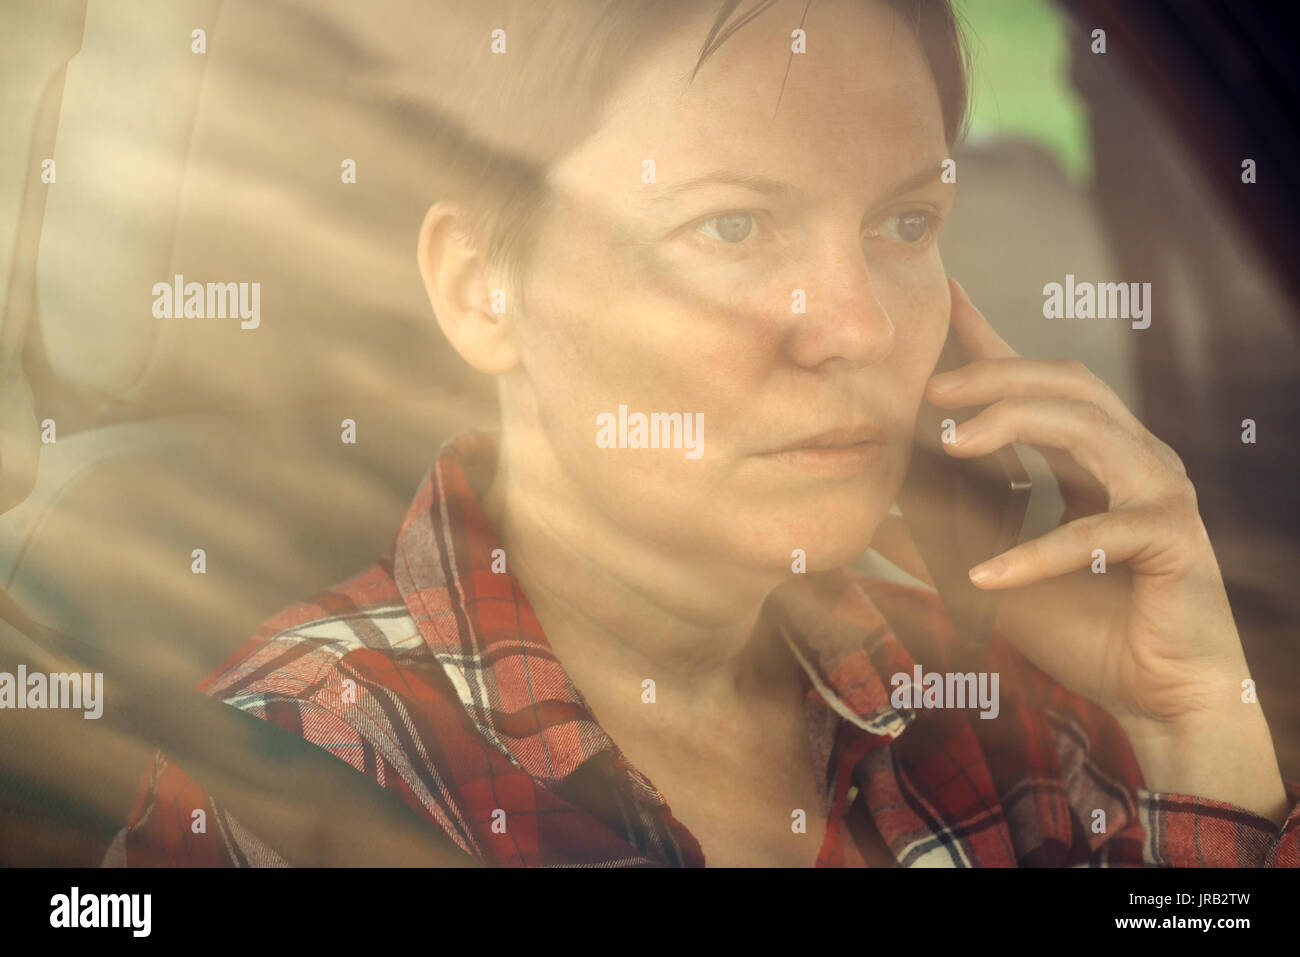 Preocupado mujer hablando por un teléfono móvil en el coche, interesados adulto hembra caucásica persona durante la conversación telefónica Foto de stock